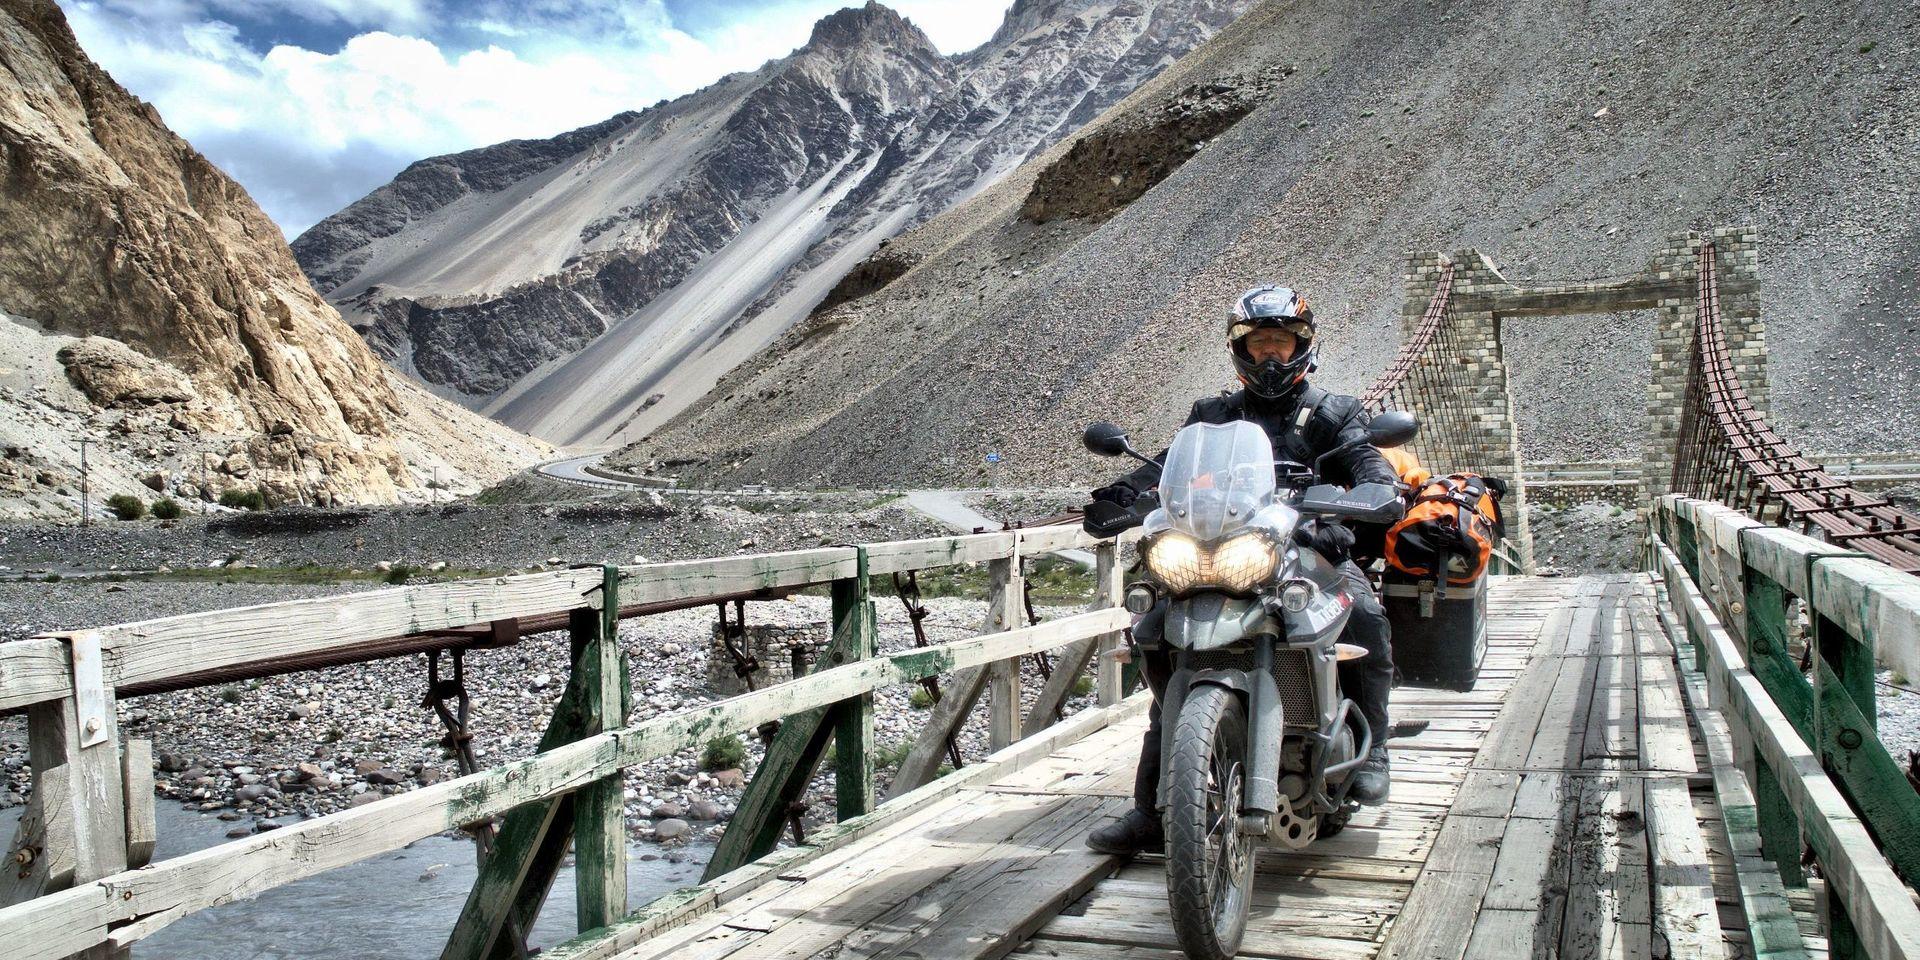 Den 2 300 mil långa resan gick bland annat genom Pakistan, där Mikael fick se Himalaya. I Pakistan skulle Mikael också komma att passera staden Abottabad, där Usama Bin Laden levde innan han blev dödad. 